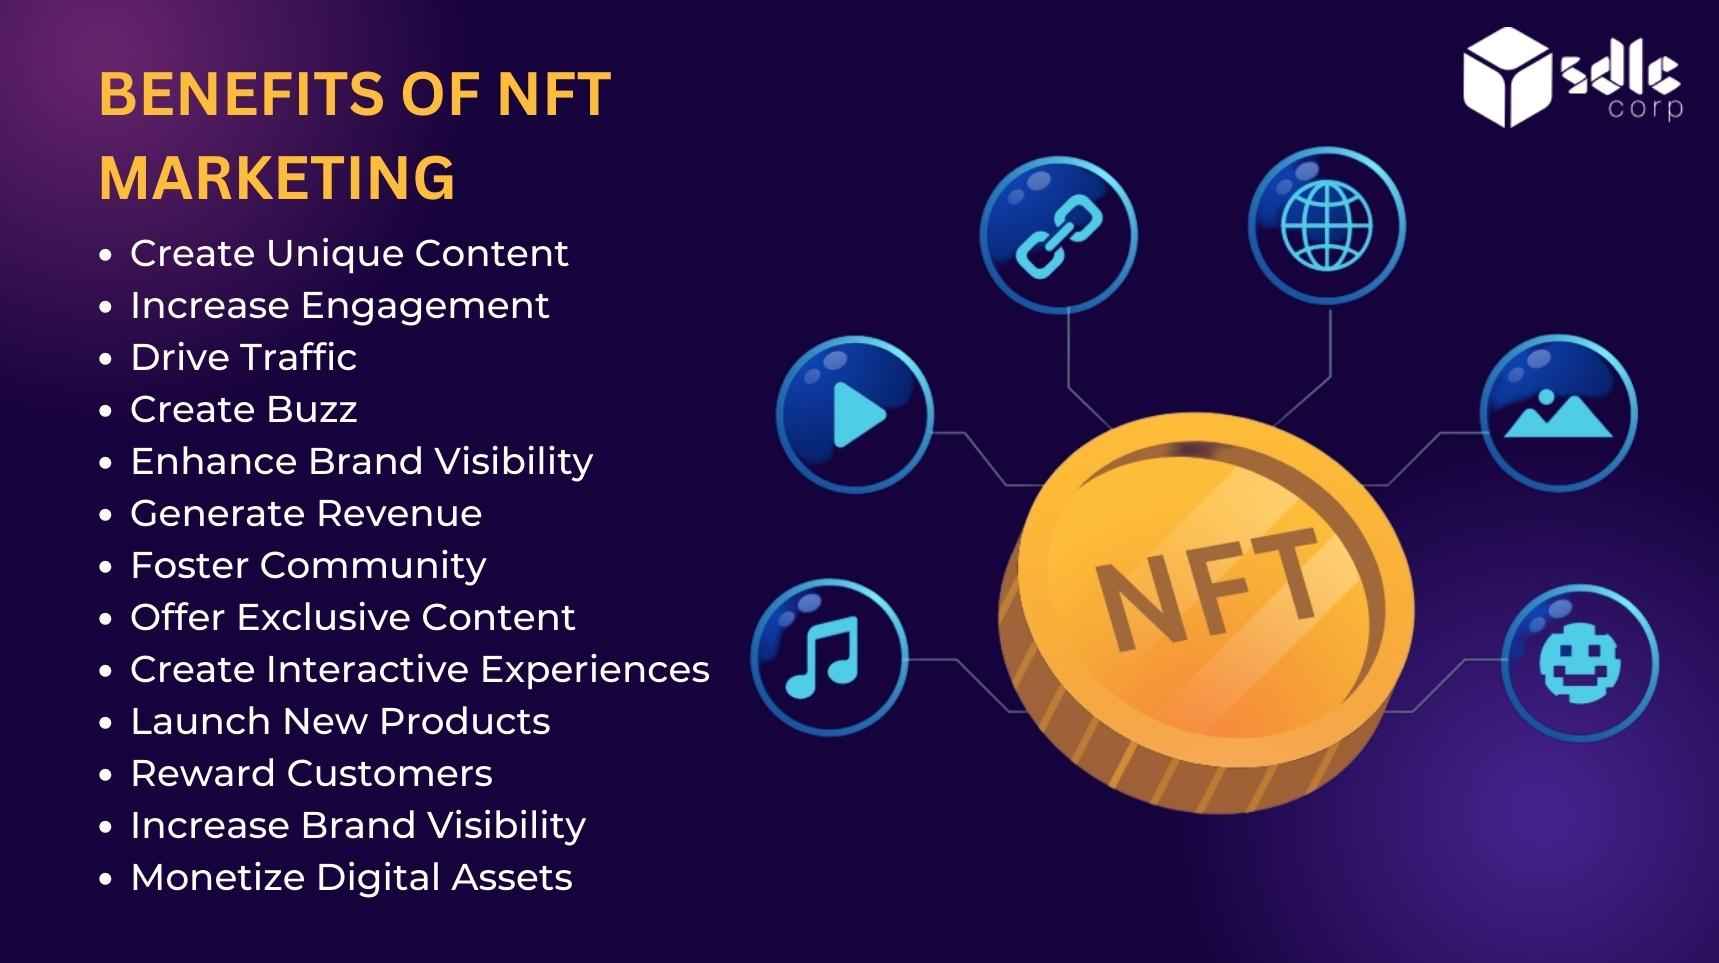 Benefits NFT Marketing - SDLC Corp